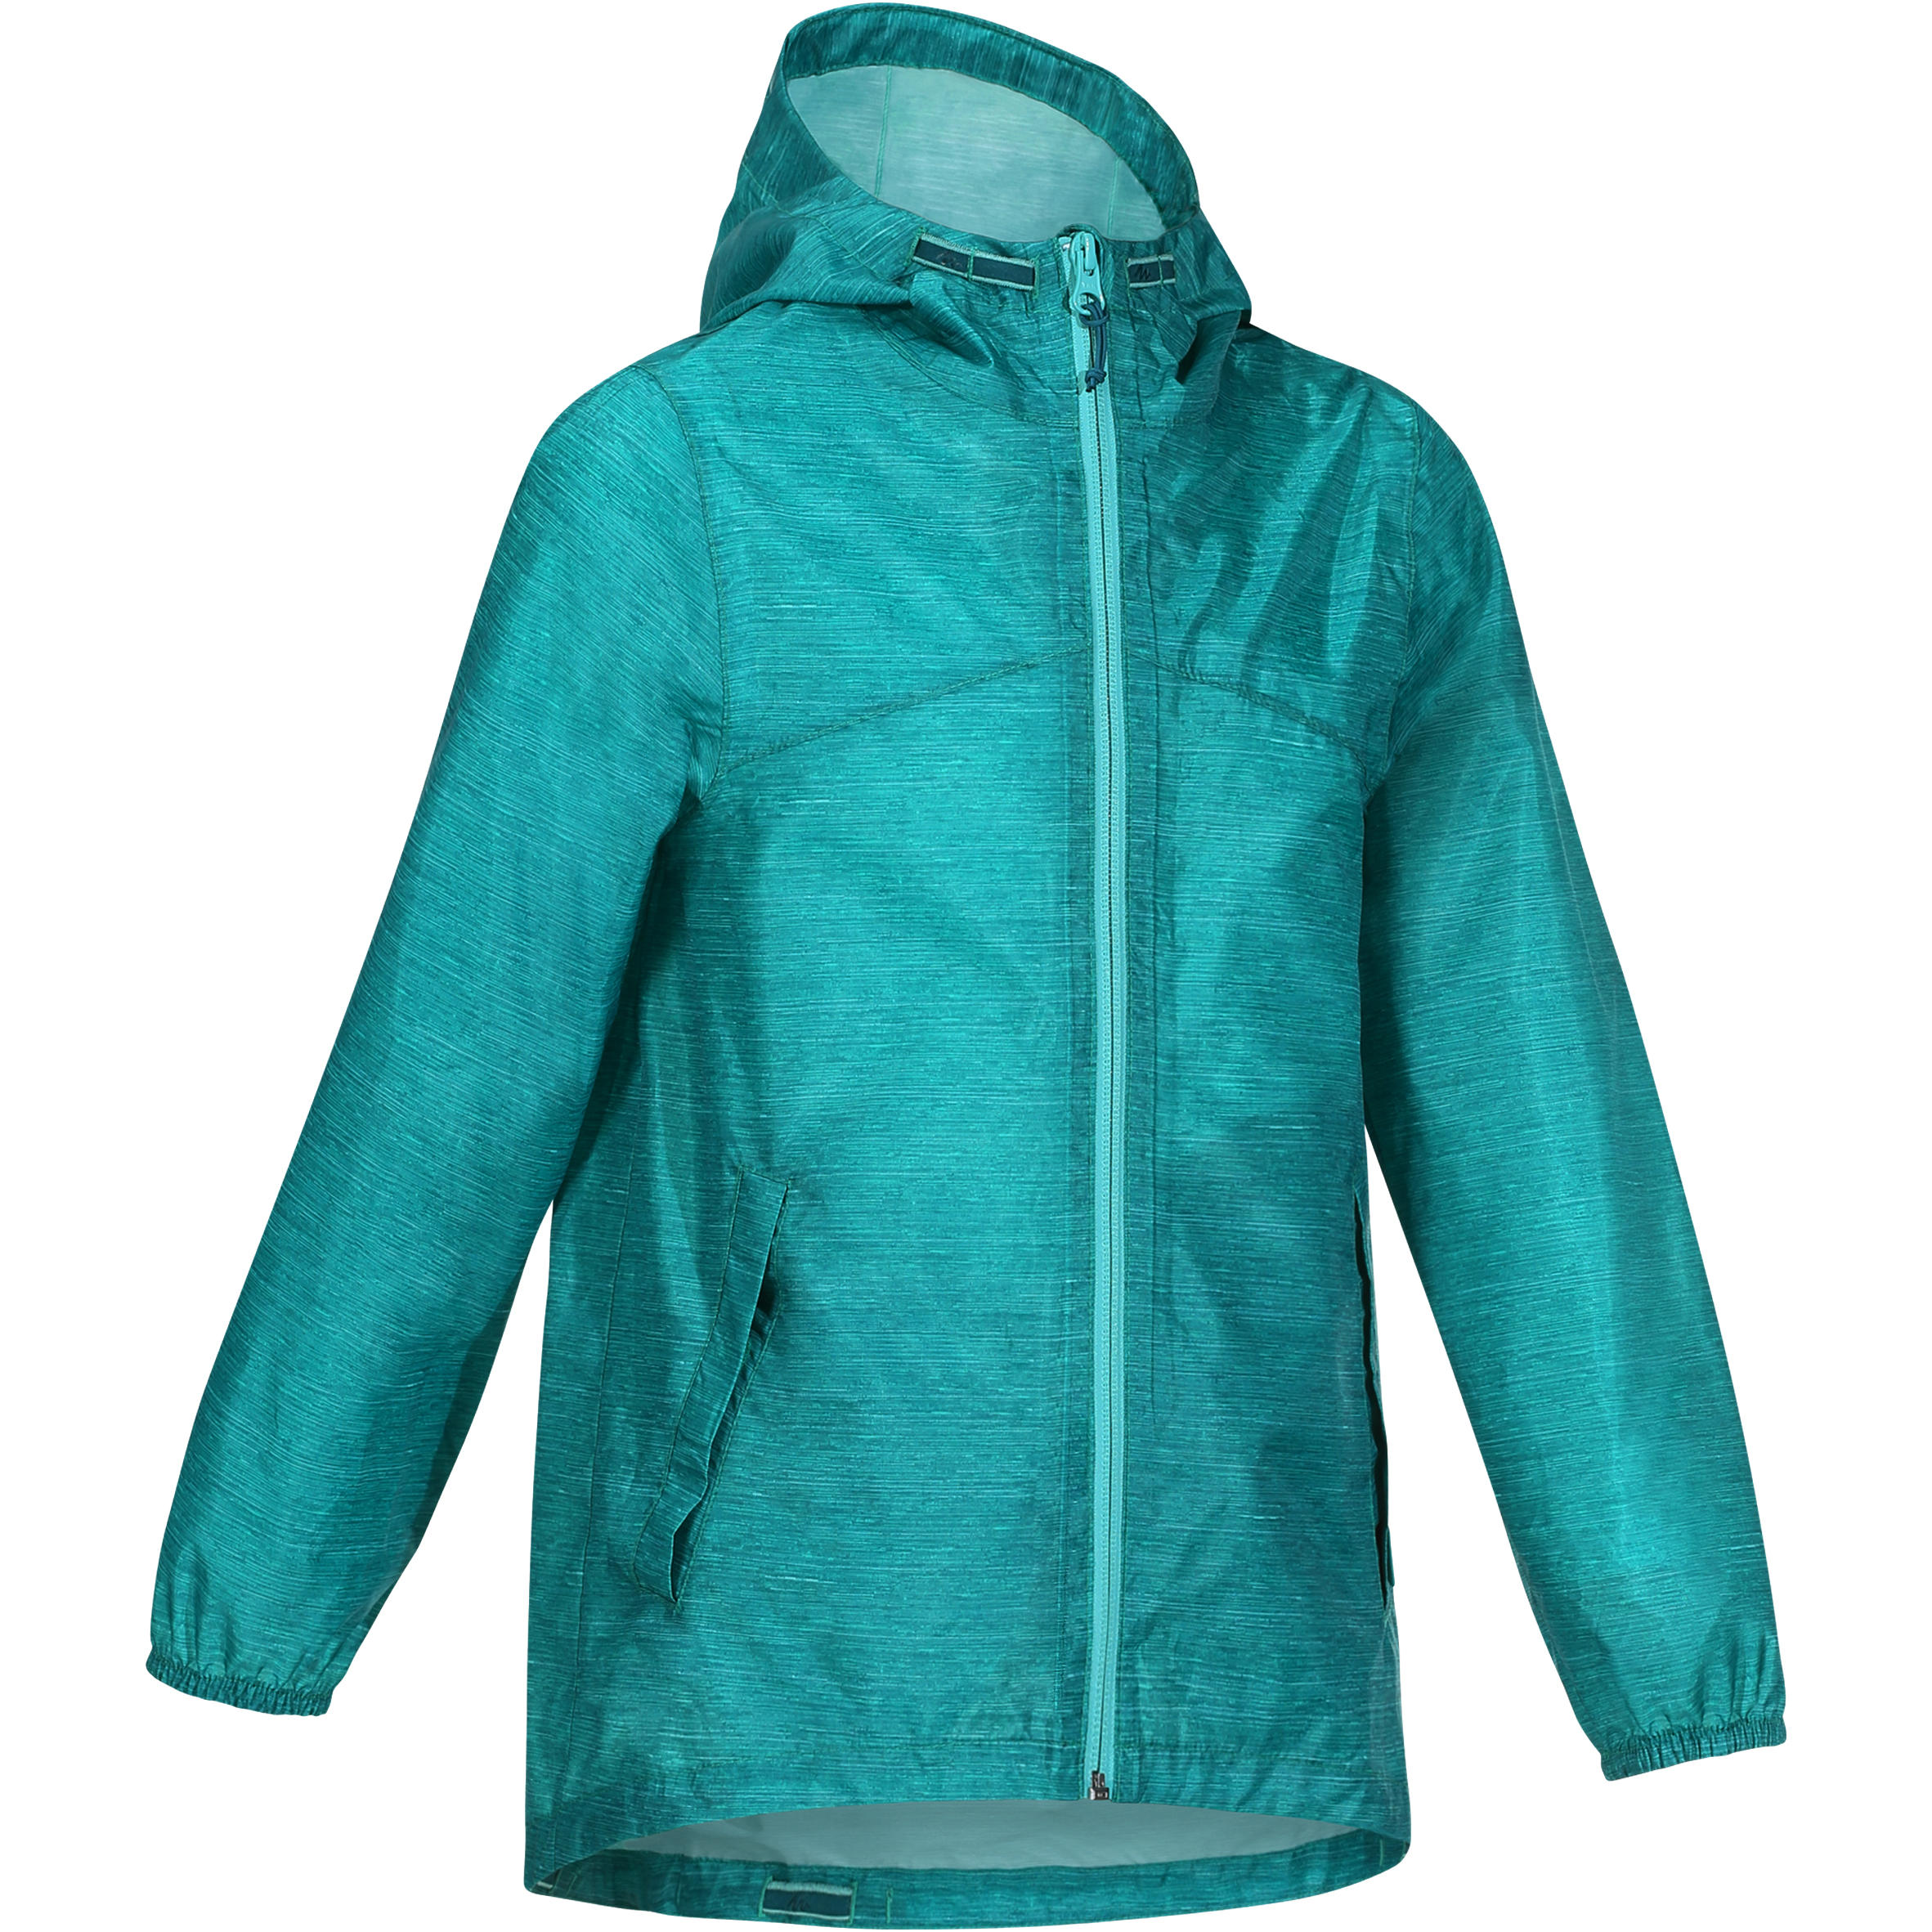 QUECHUA Hike 100 Girl’s green waterproof hiking jacket